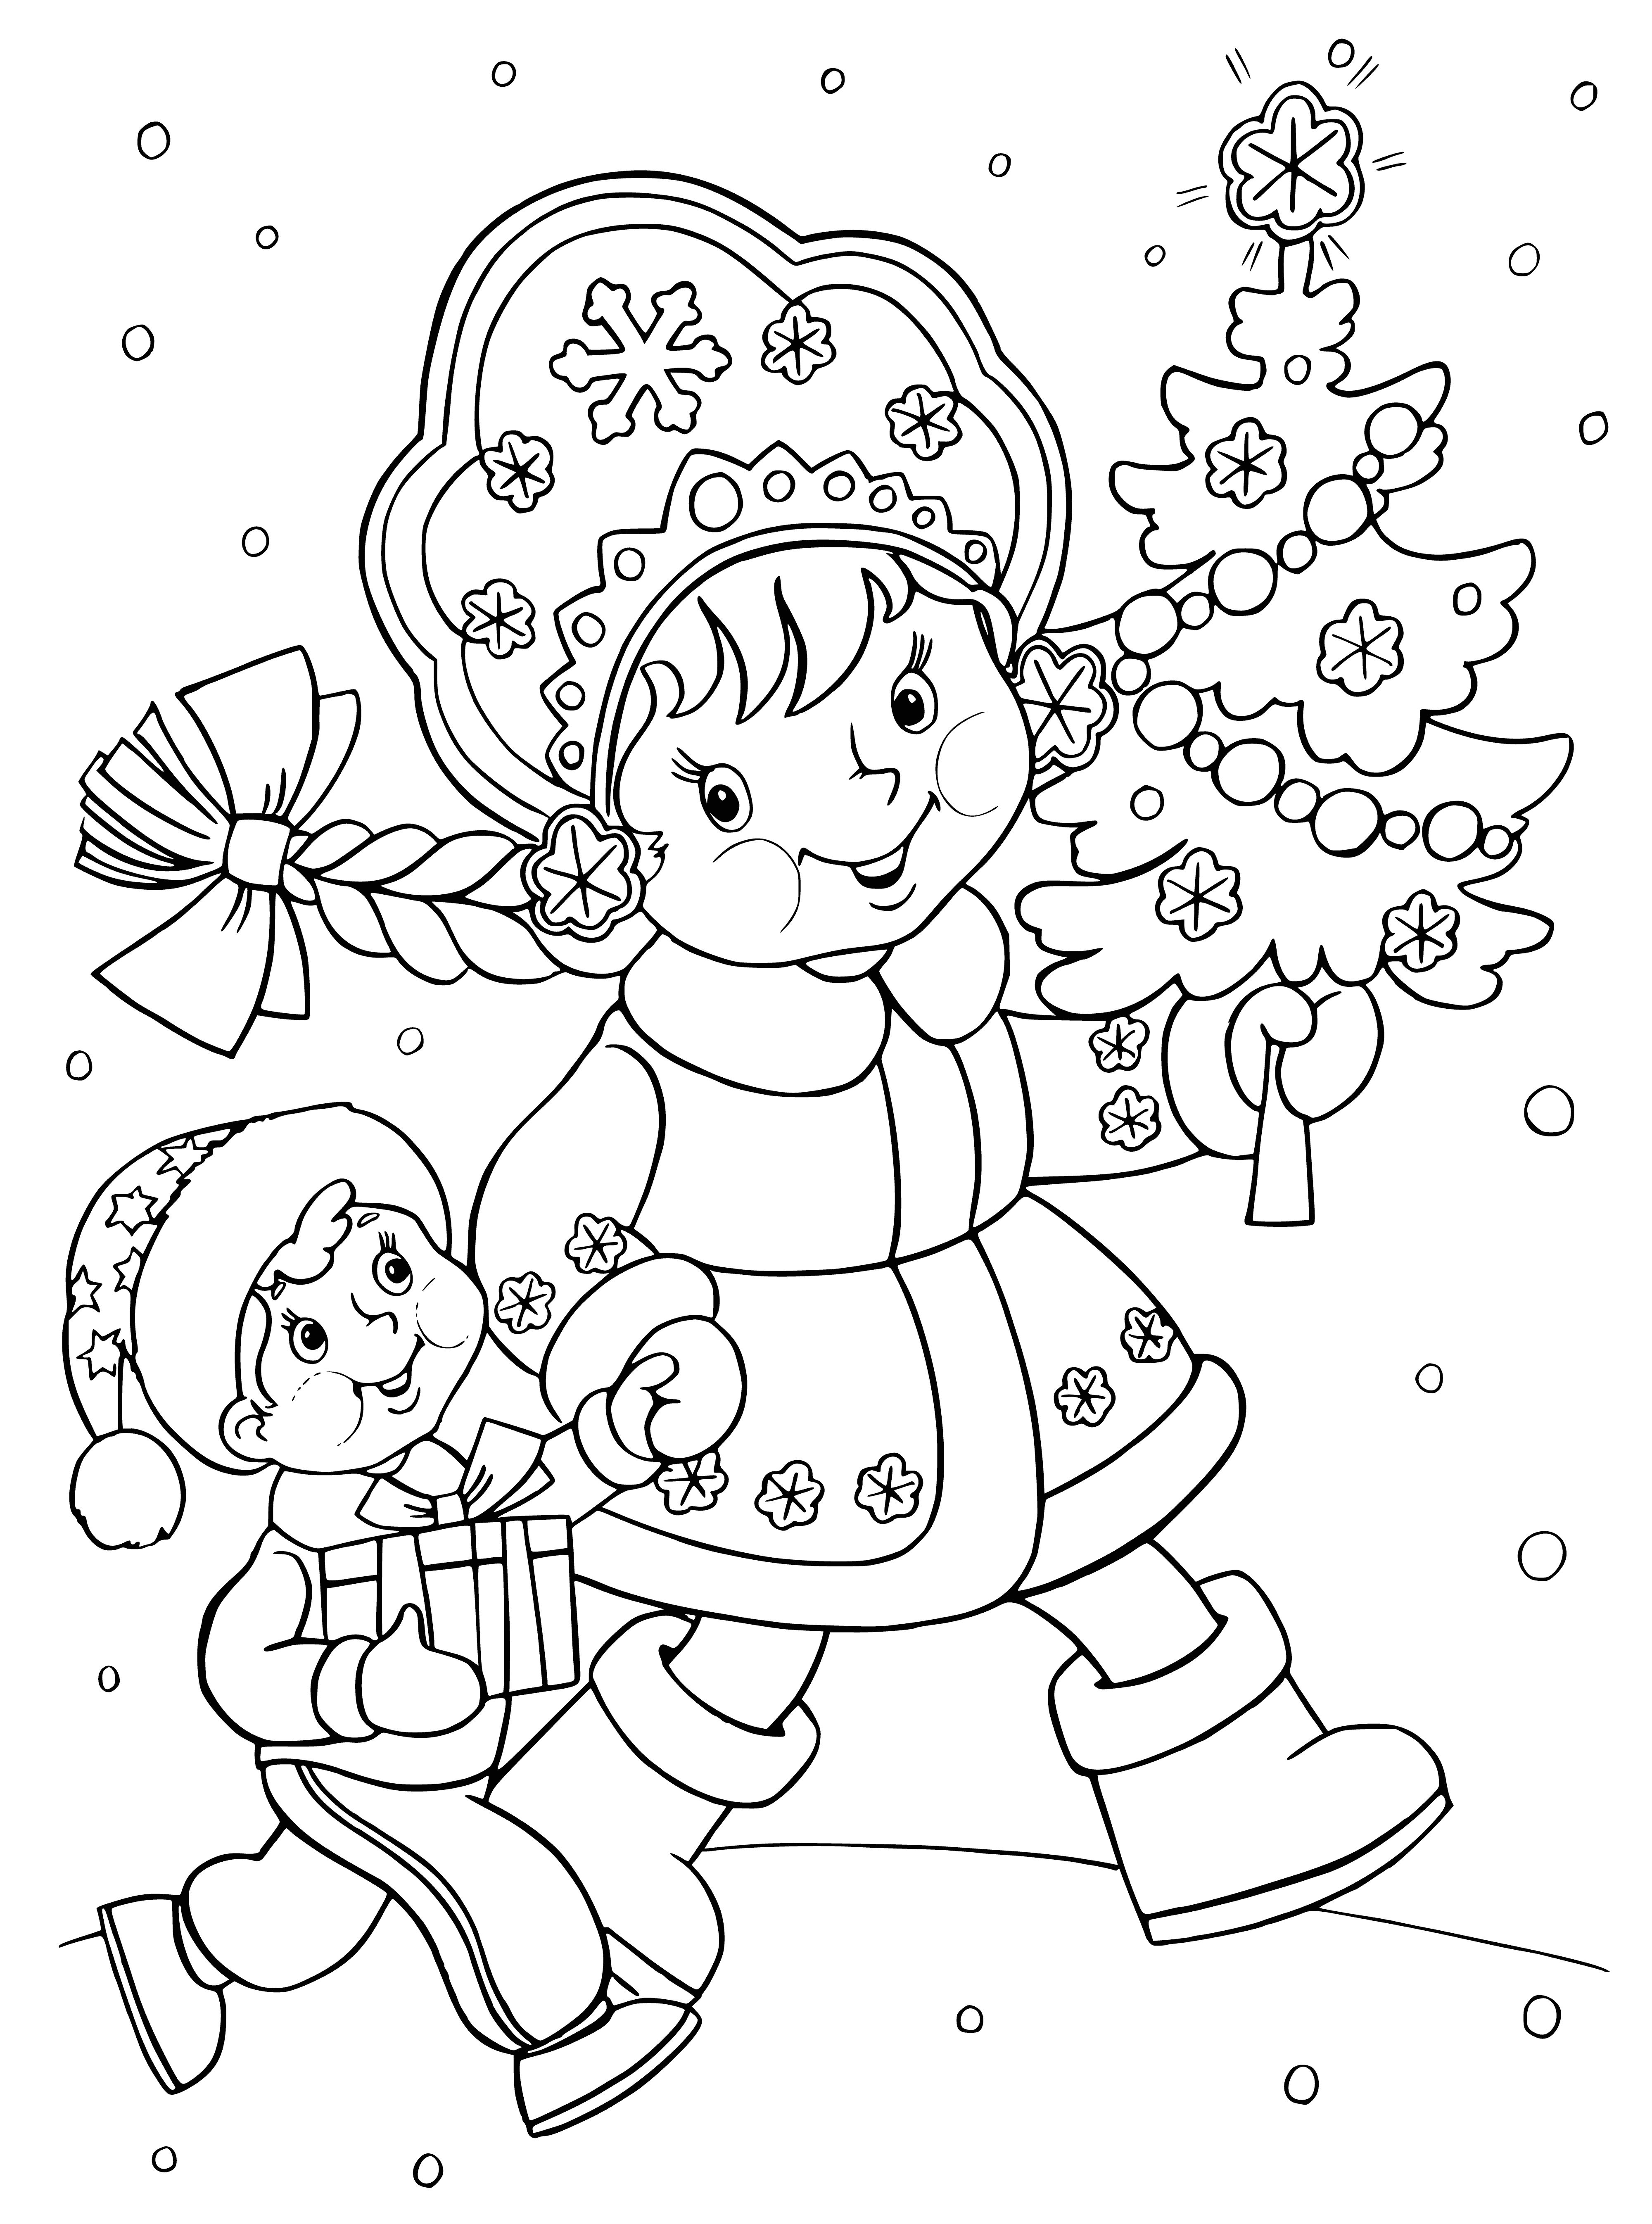 Śnieżna Panna z choinką kolorowanka